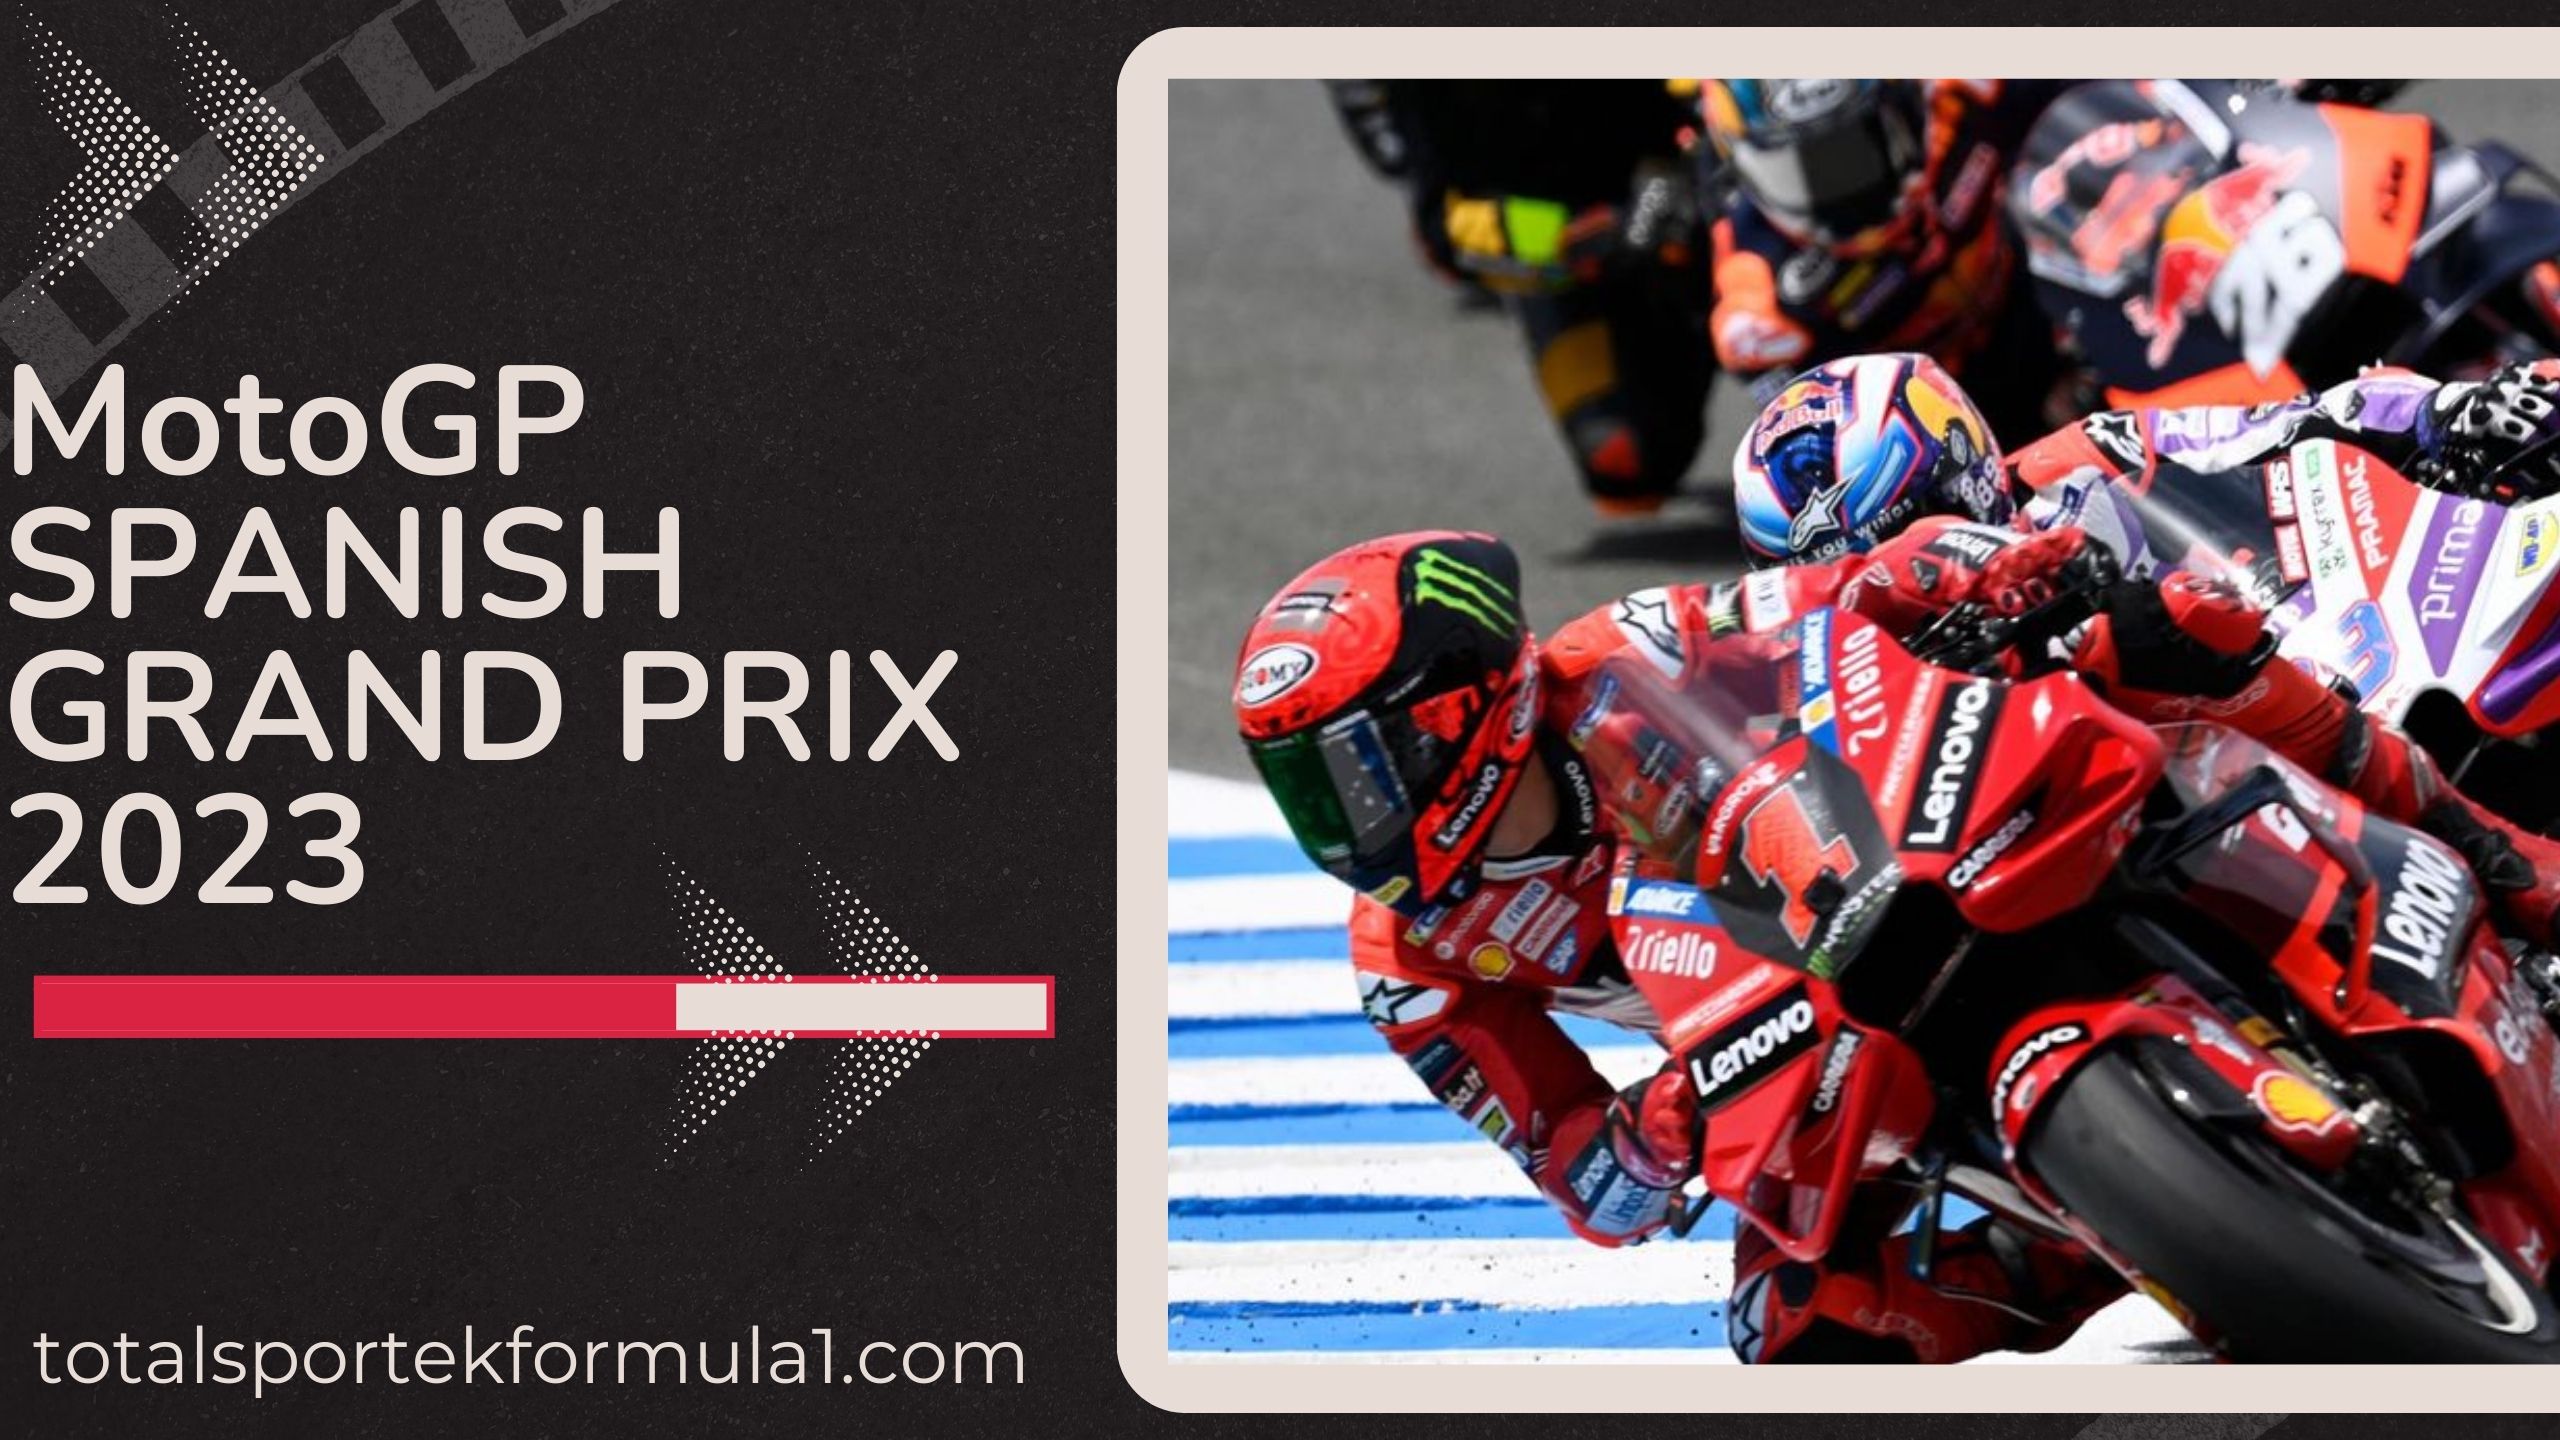 MotoGP SPANISH GRAND PRIX